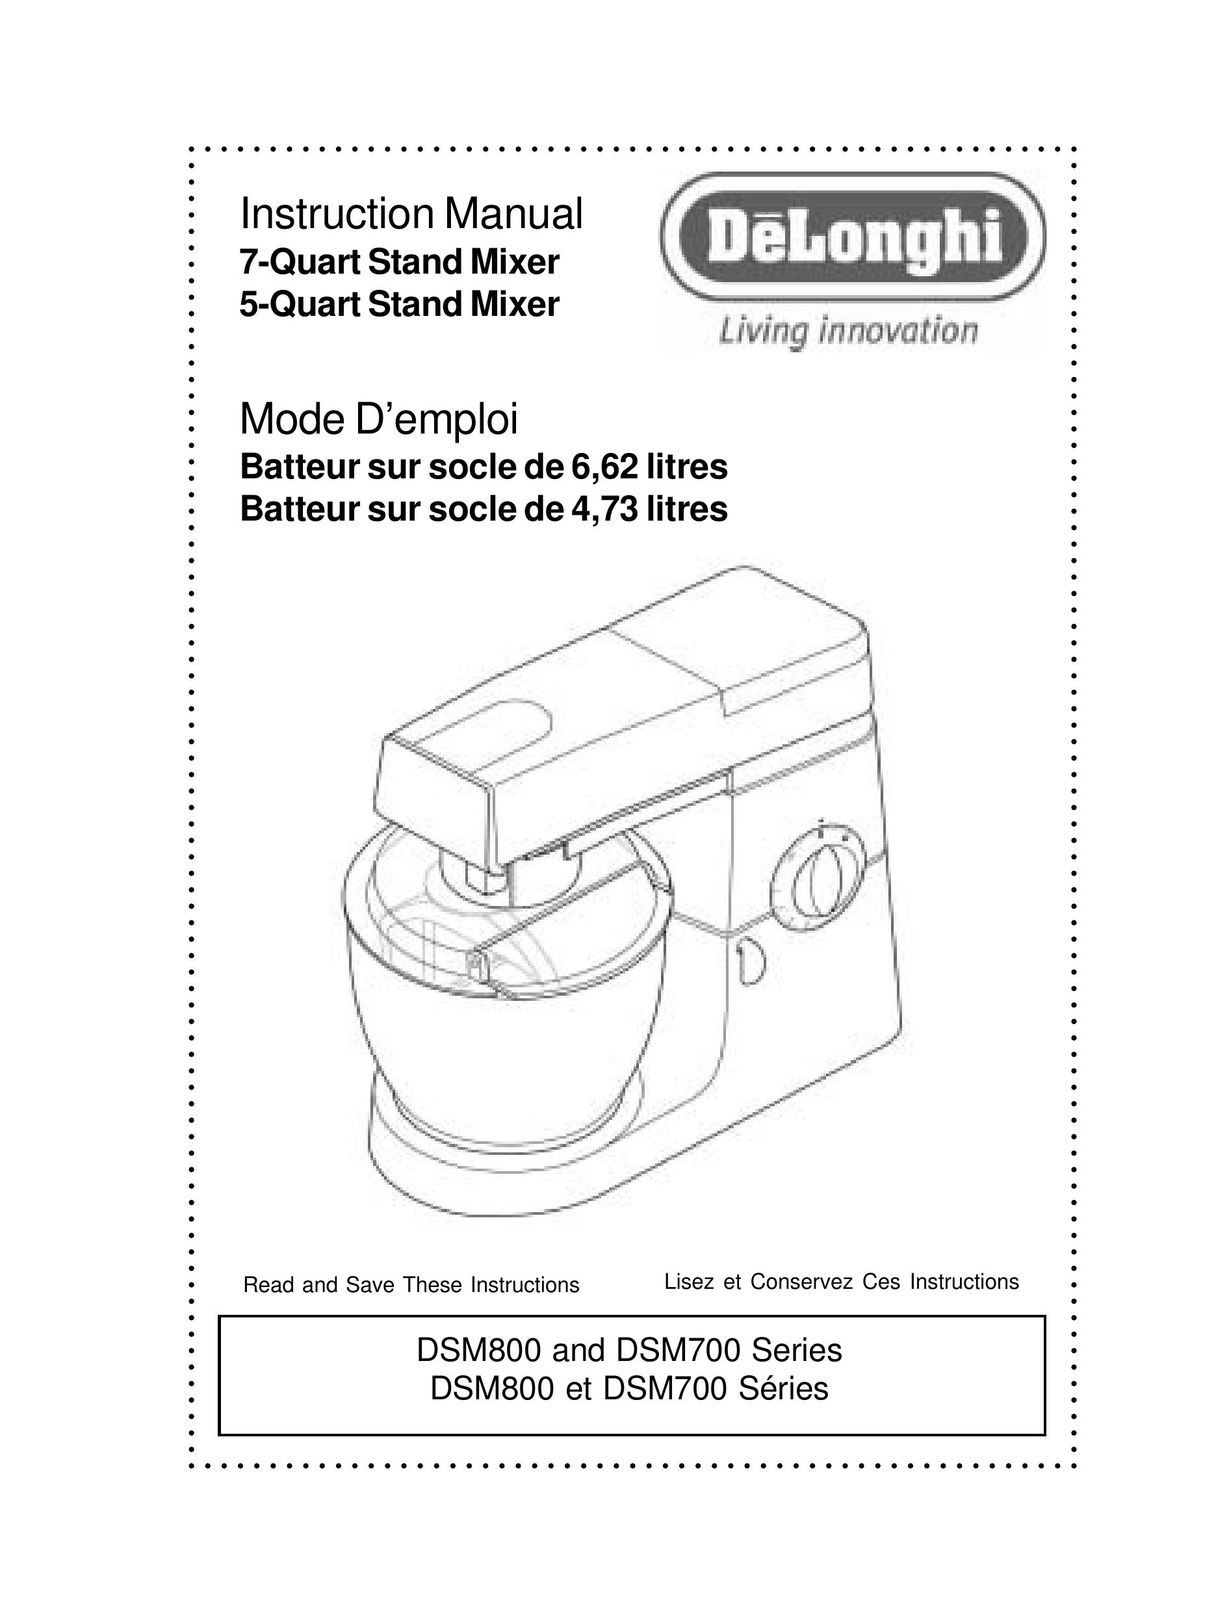 DeLonghi 5-Quart Stand Mixer Blender User Manual